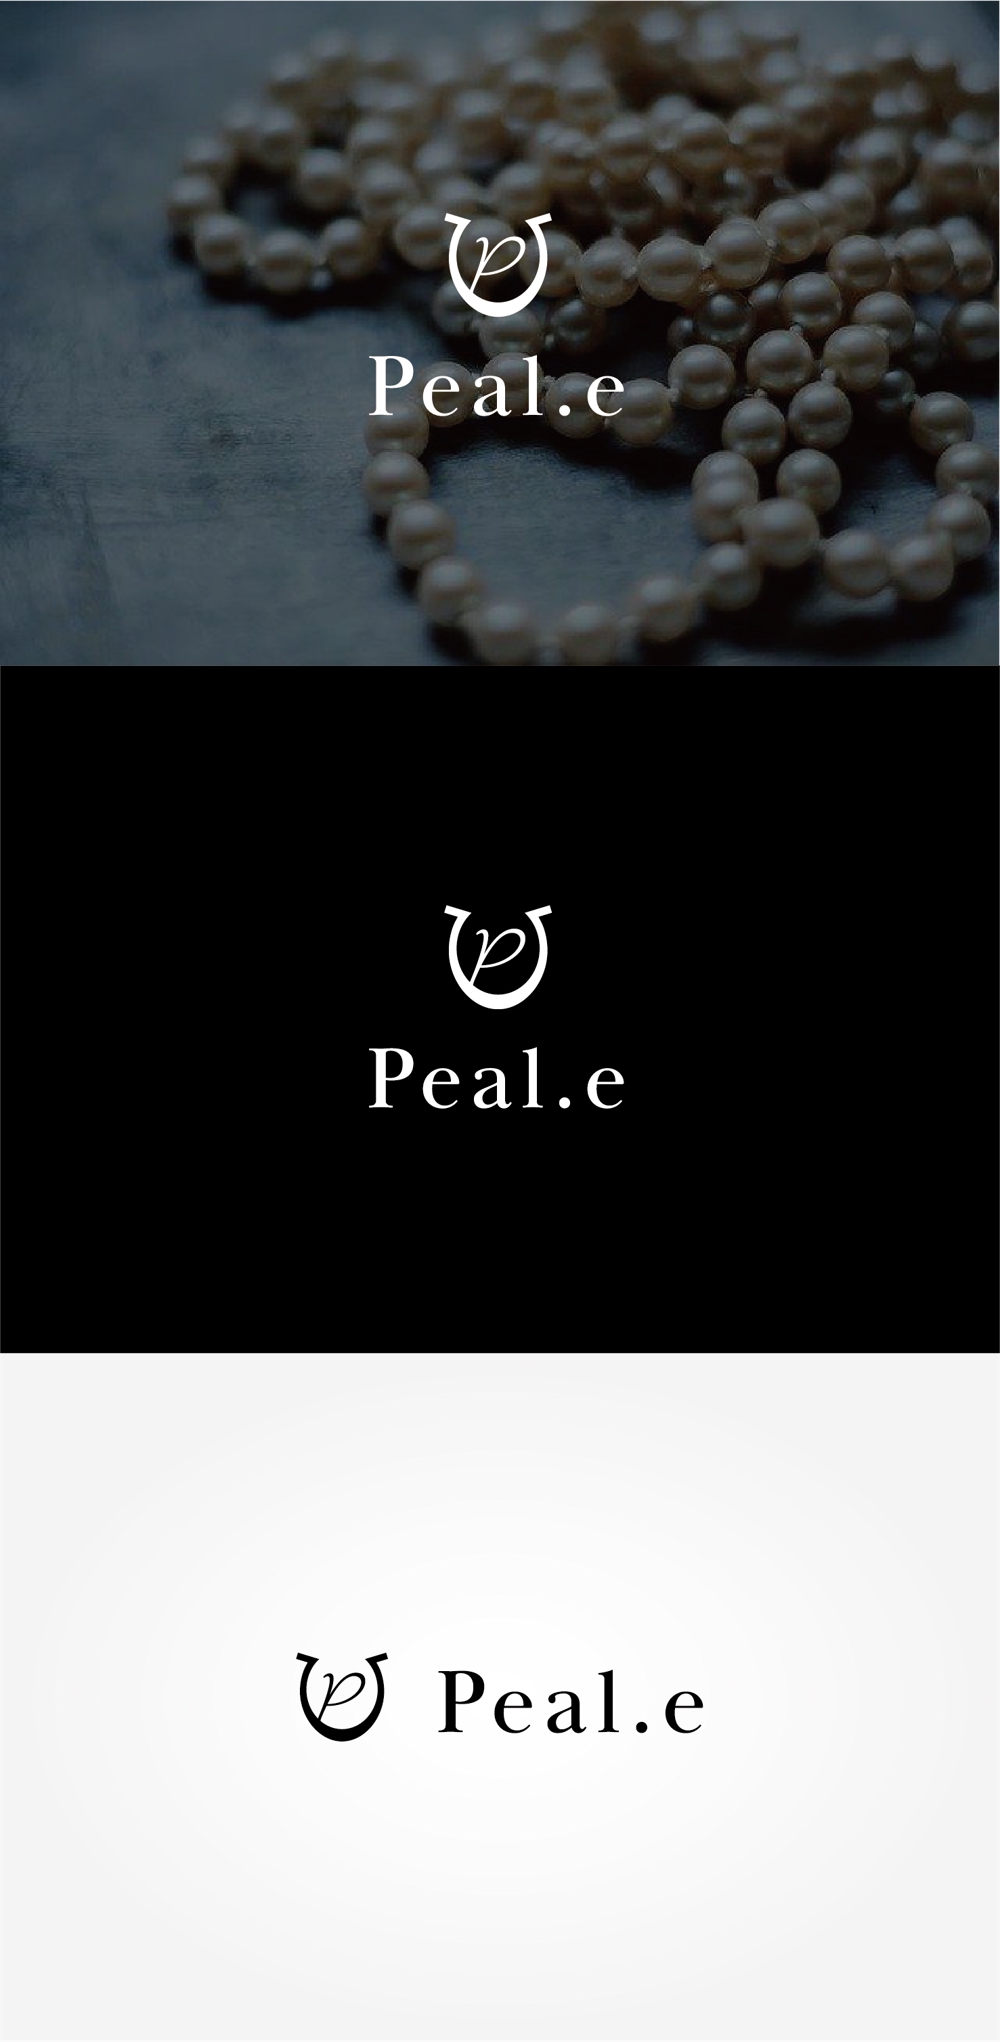 パールを使用したアクセサリーショップサイト「Peal.e」のロゴとマーク